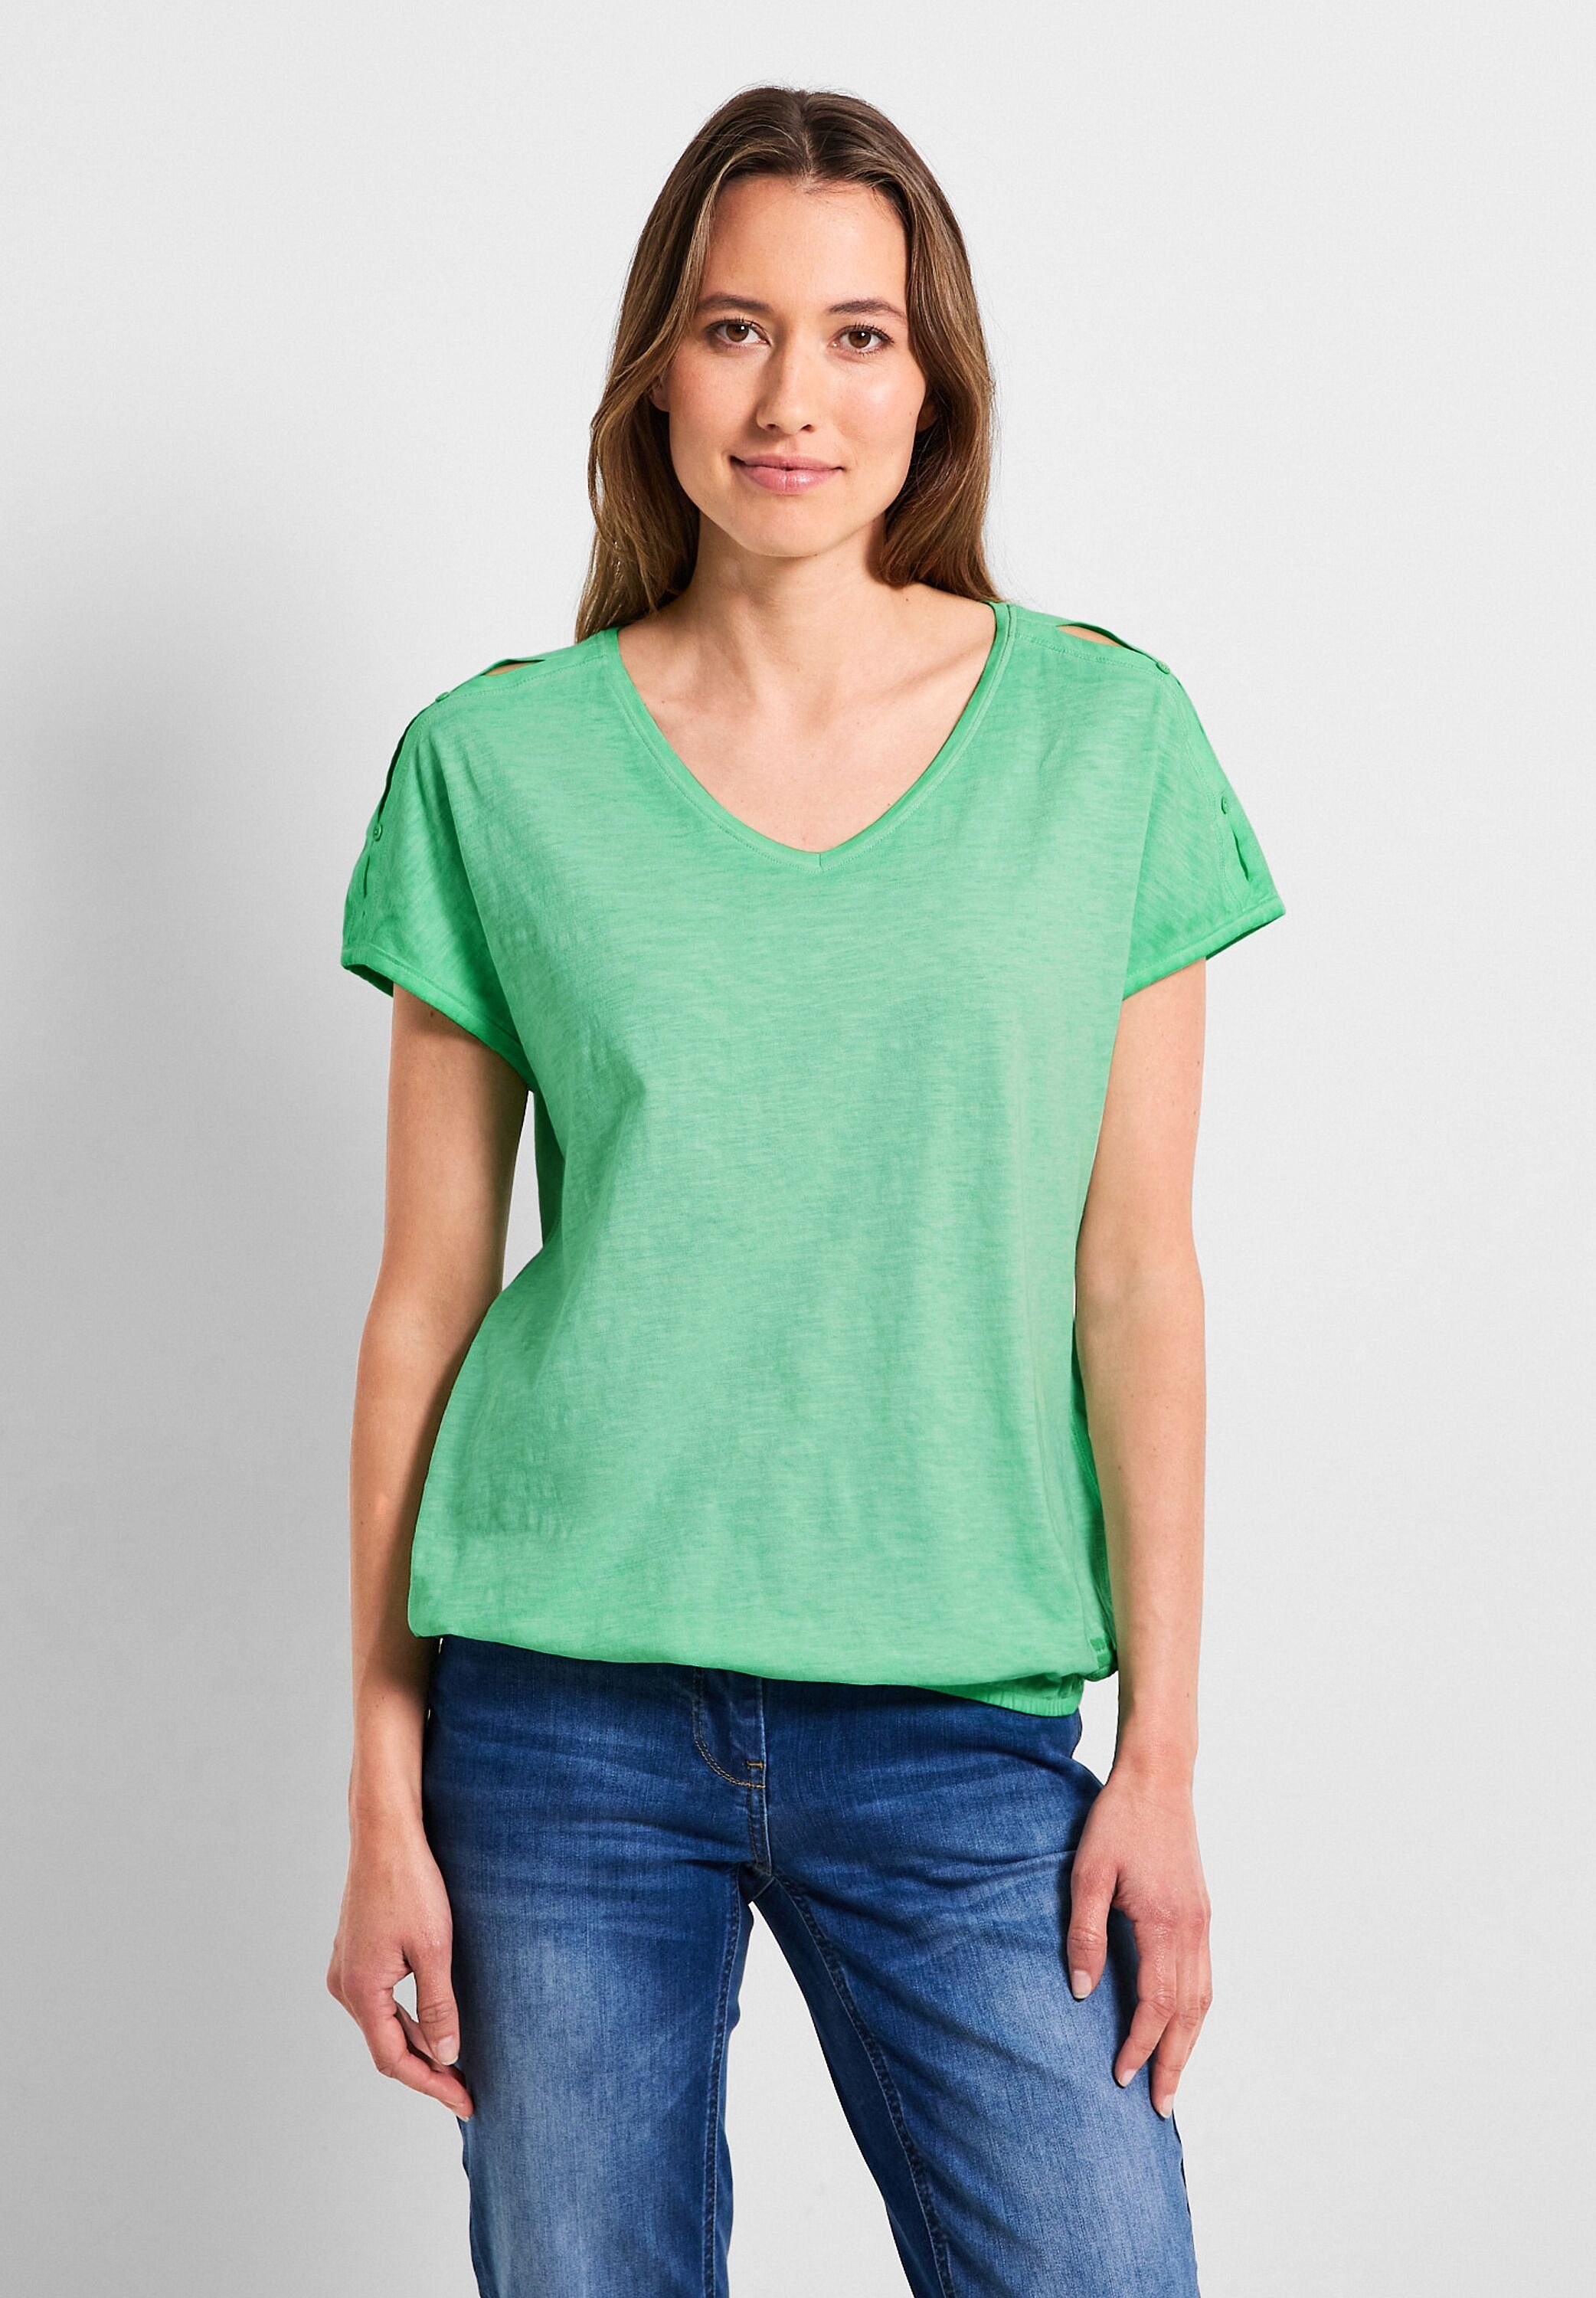 Ein toller Ausverkauf ist im Gange! Cecil T-Shirt der Farbfamilie..: mit den an Cut-Outs Cut-Out an Schulter, Designs Gummizugsaum, Schultern, Grün